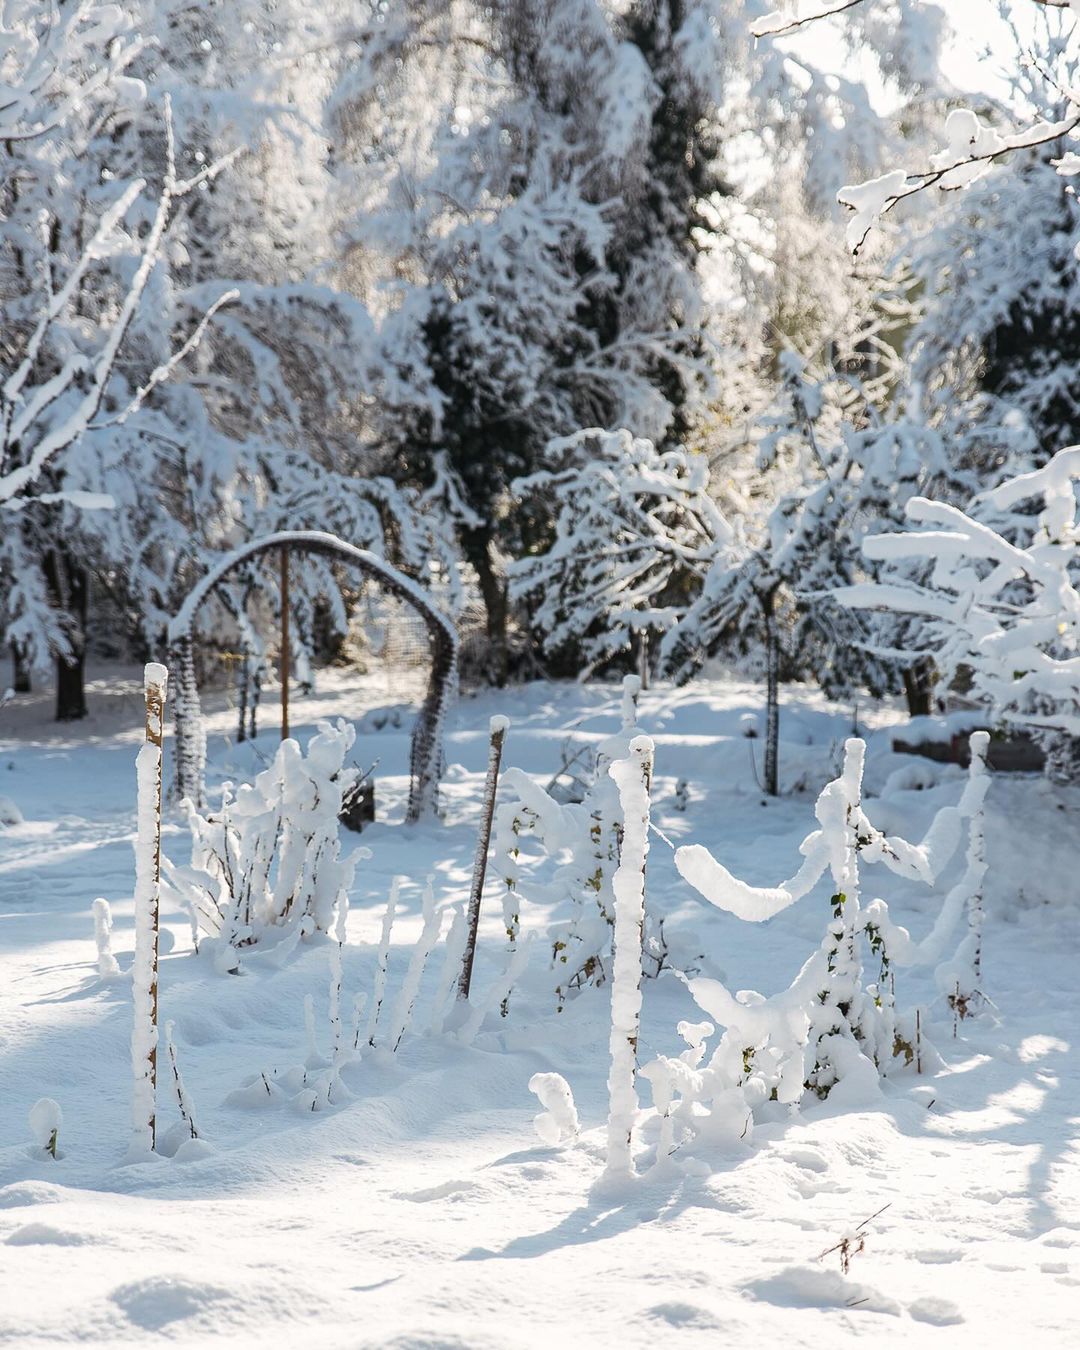 Gestern präsentierte sich der Garten als Winterwunderland :). Tief in Schnee gehüllt mit strahlend blauem Himmel. Zum Glück lag eine schön isolierende Schneedecke, die Nächte gestern und heute waren nämlich bitter kalt. Soviel Schnee gibt es hier tatsächlich eher selten. In den 11 Jahren, die wir hier im Quartier wohnen, 2 mal. Und das er auch noch länger als 1 Tag liegen bleibt, so gut wie nie.
.
#nachbarschaftsgarten #urbangardening #garten #gemeinschaftsgarten #zürichcity #seebach #urbanesgärtnern #städtischergarten #nachhaltigegärten #stadtgarten #schneeinzürich #zürischnee #winterwunderland #winterwonderland #wintergarten #wintergarden #snowgarden #schneegarten